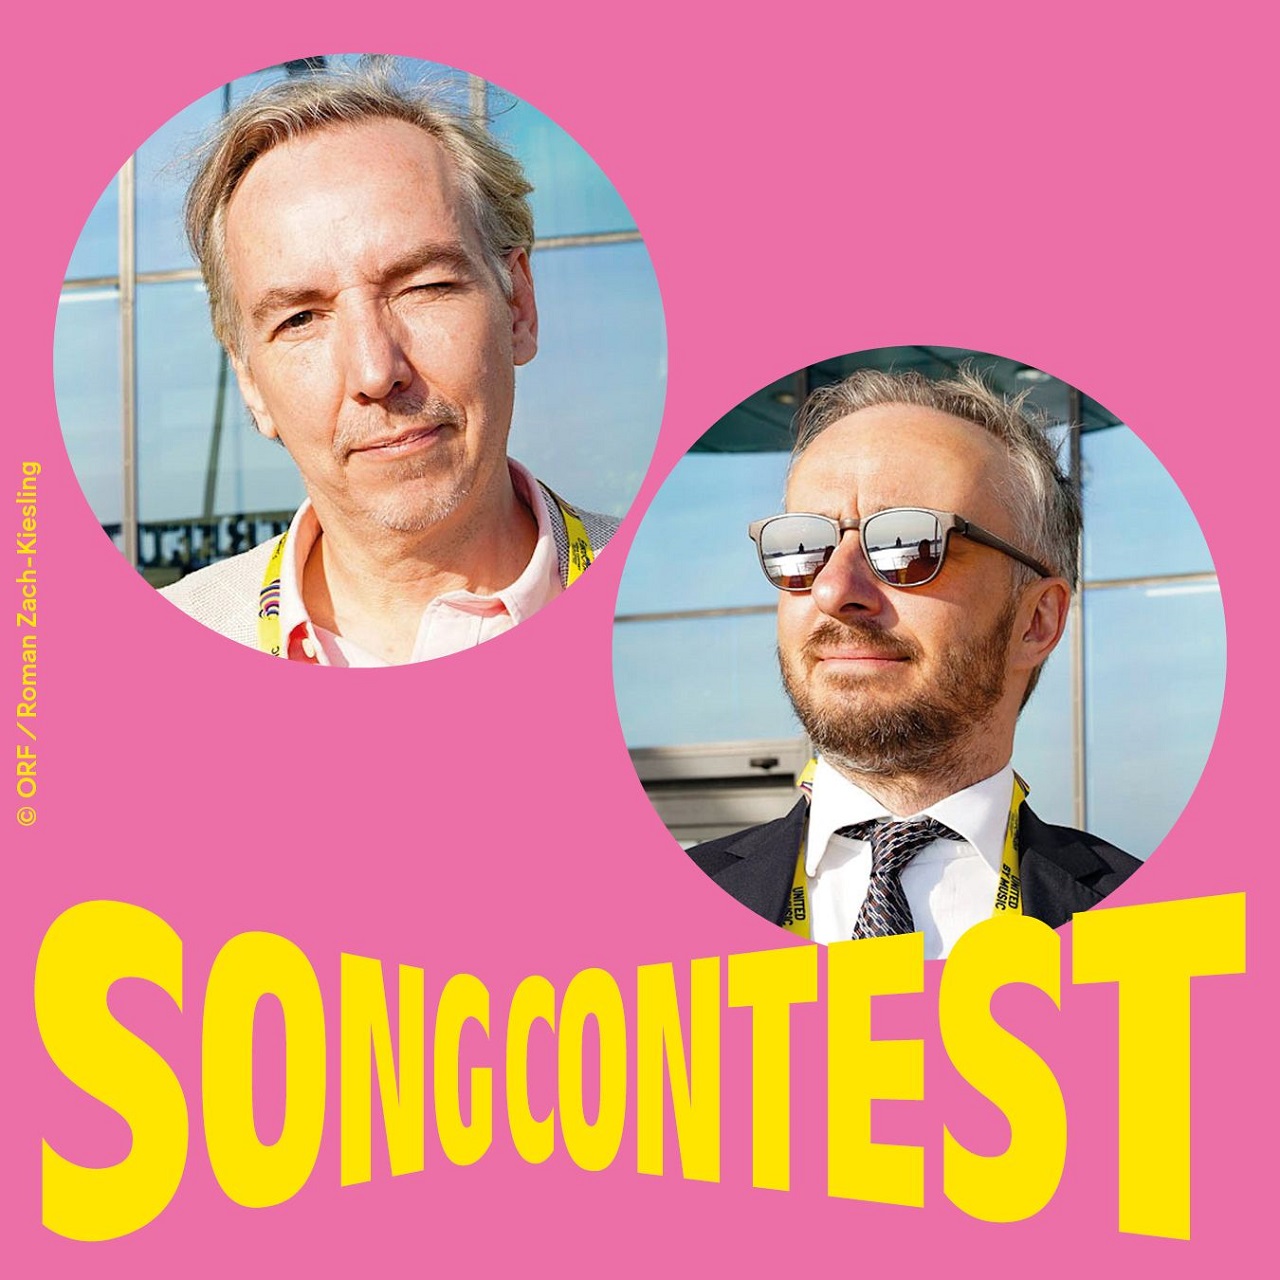 Zwei kreisförmige Fotos von Jan Böhmermann und Olli Schulz vor pinkem Hintergrund und dem Schriftzug "Songcontest"